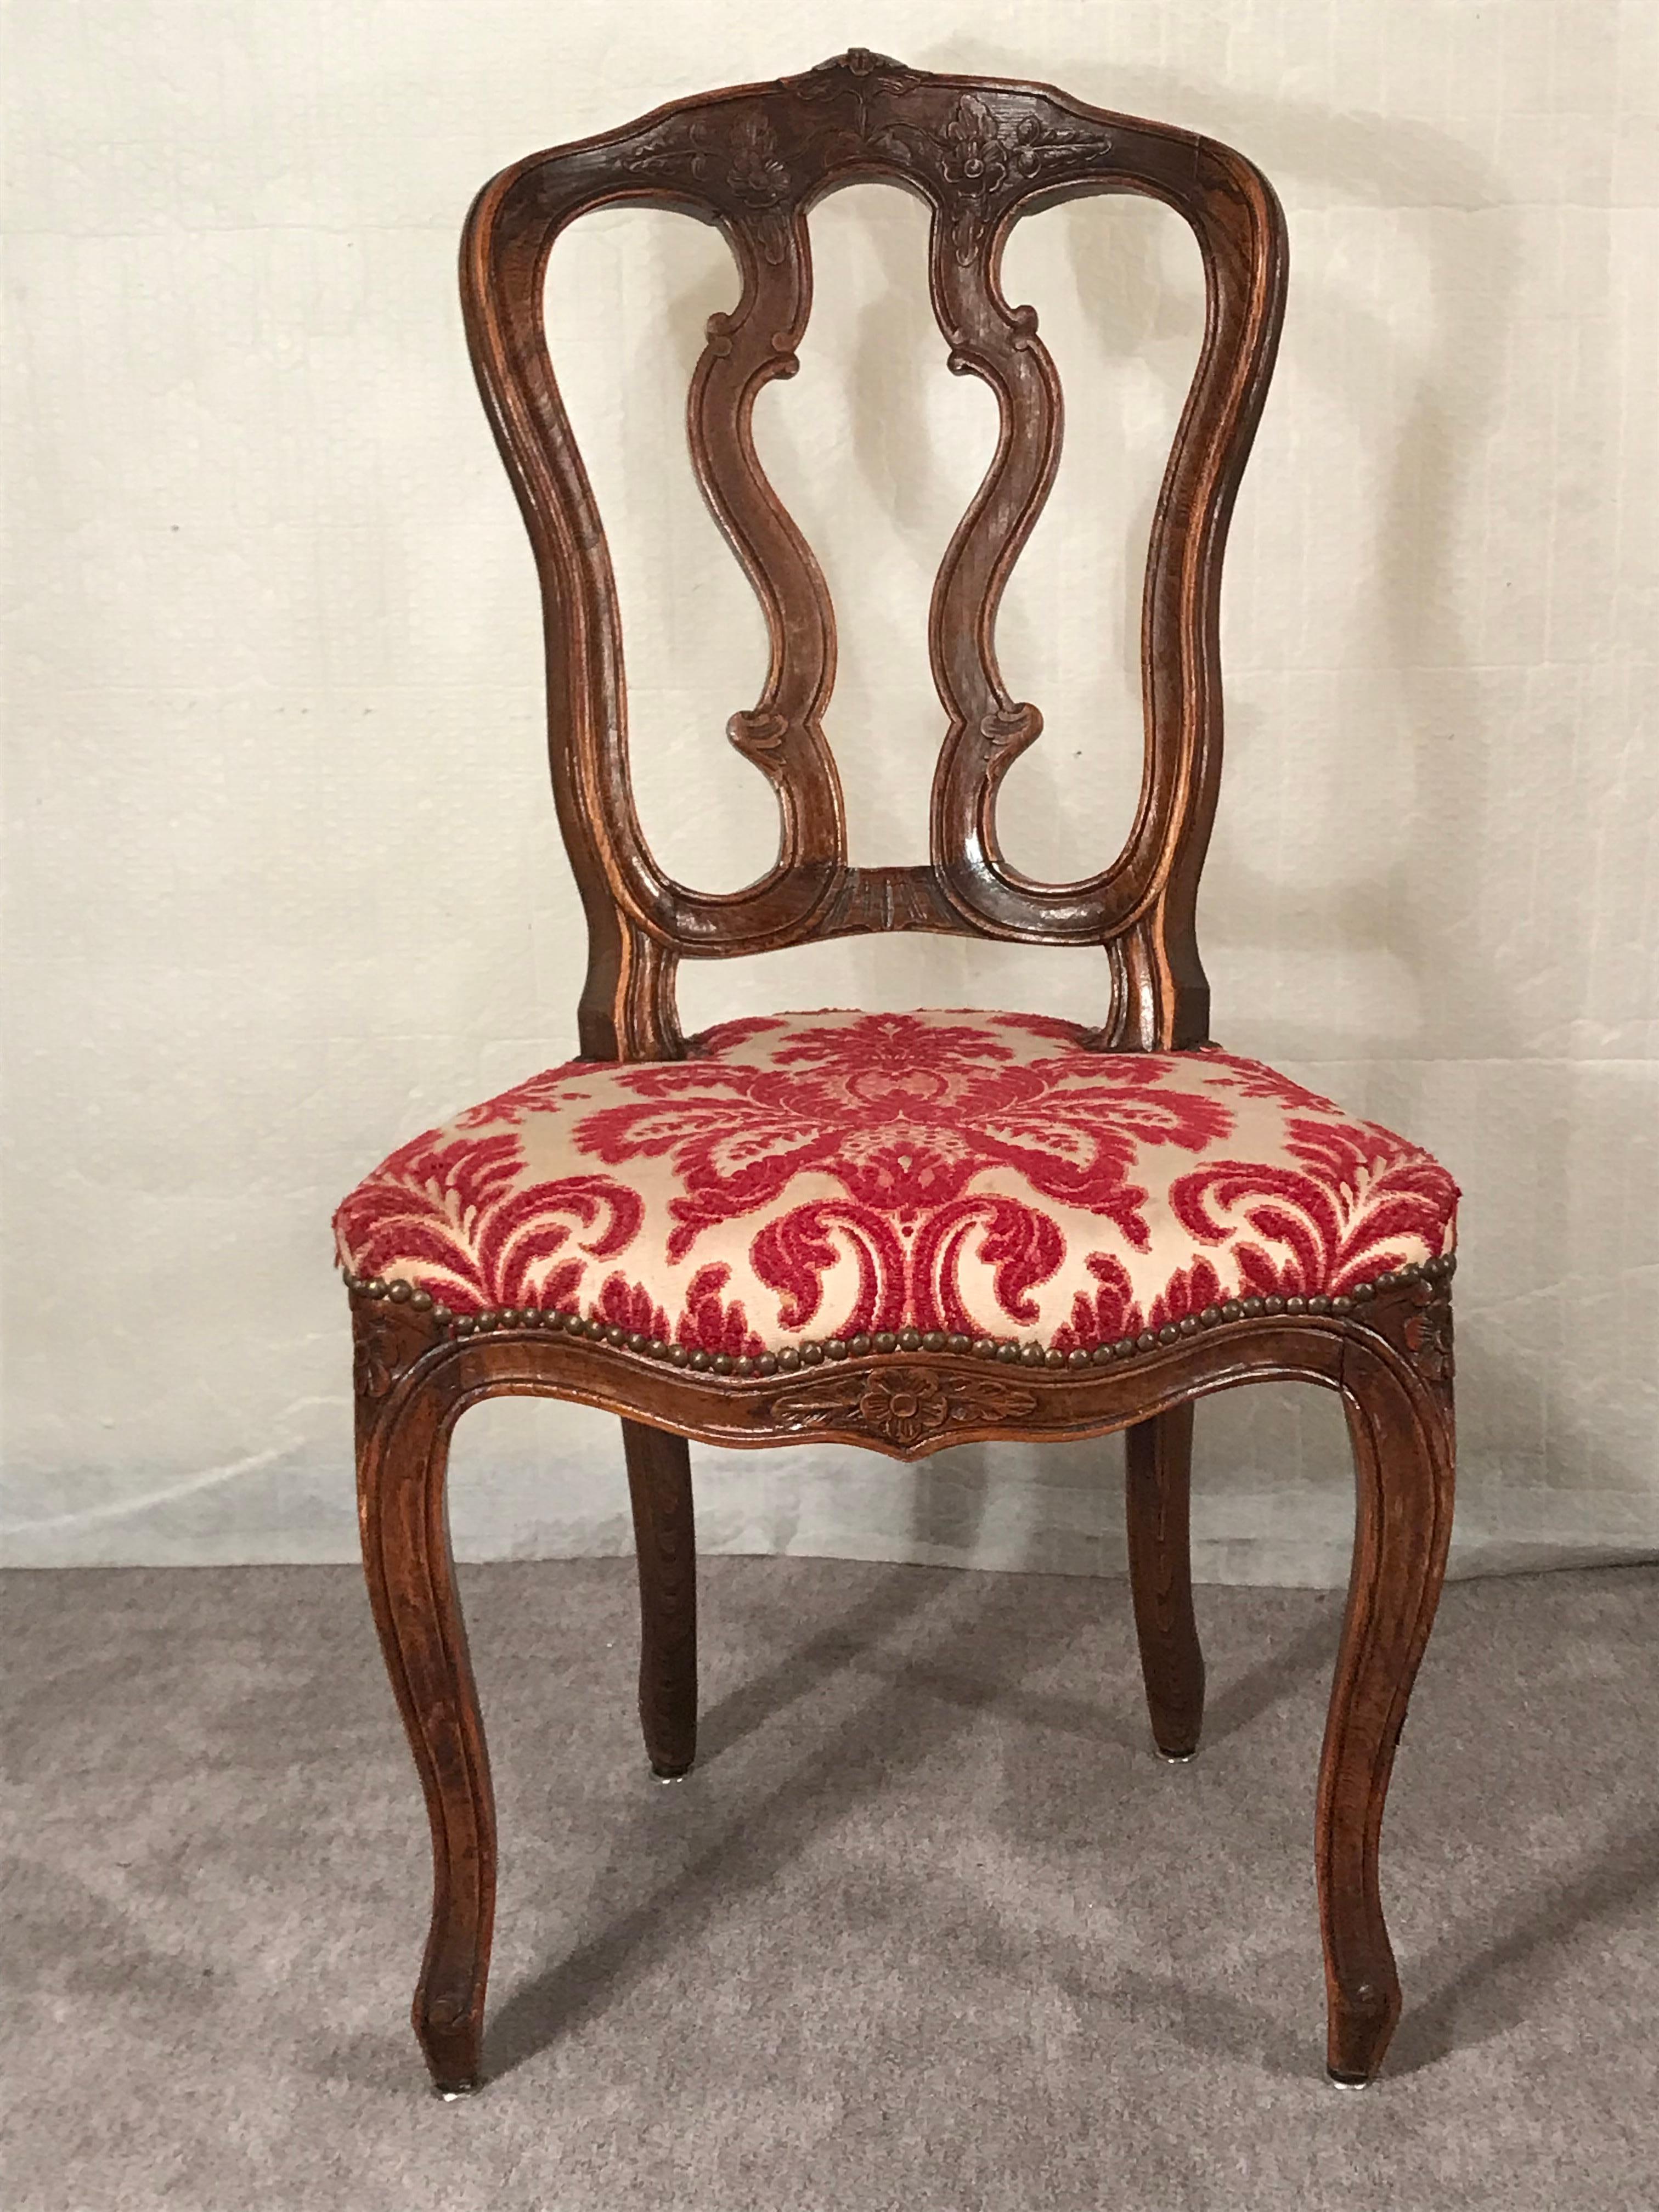 Dieser originale Satz von 6 Barockstühlen stammt aus Frankreich und wurde um 1760 hergestellt. Diese hübschen Stühle aus dem 18. Jahrhundert sind aus handgeschnitzter Eiche gefertigt. Sie sind mit feinen Rocaille- und Blumendekorationen verziert.